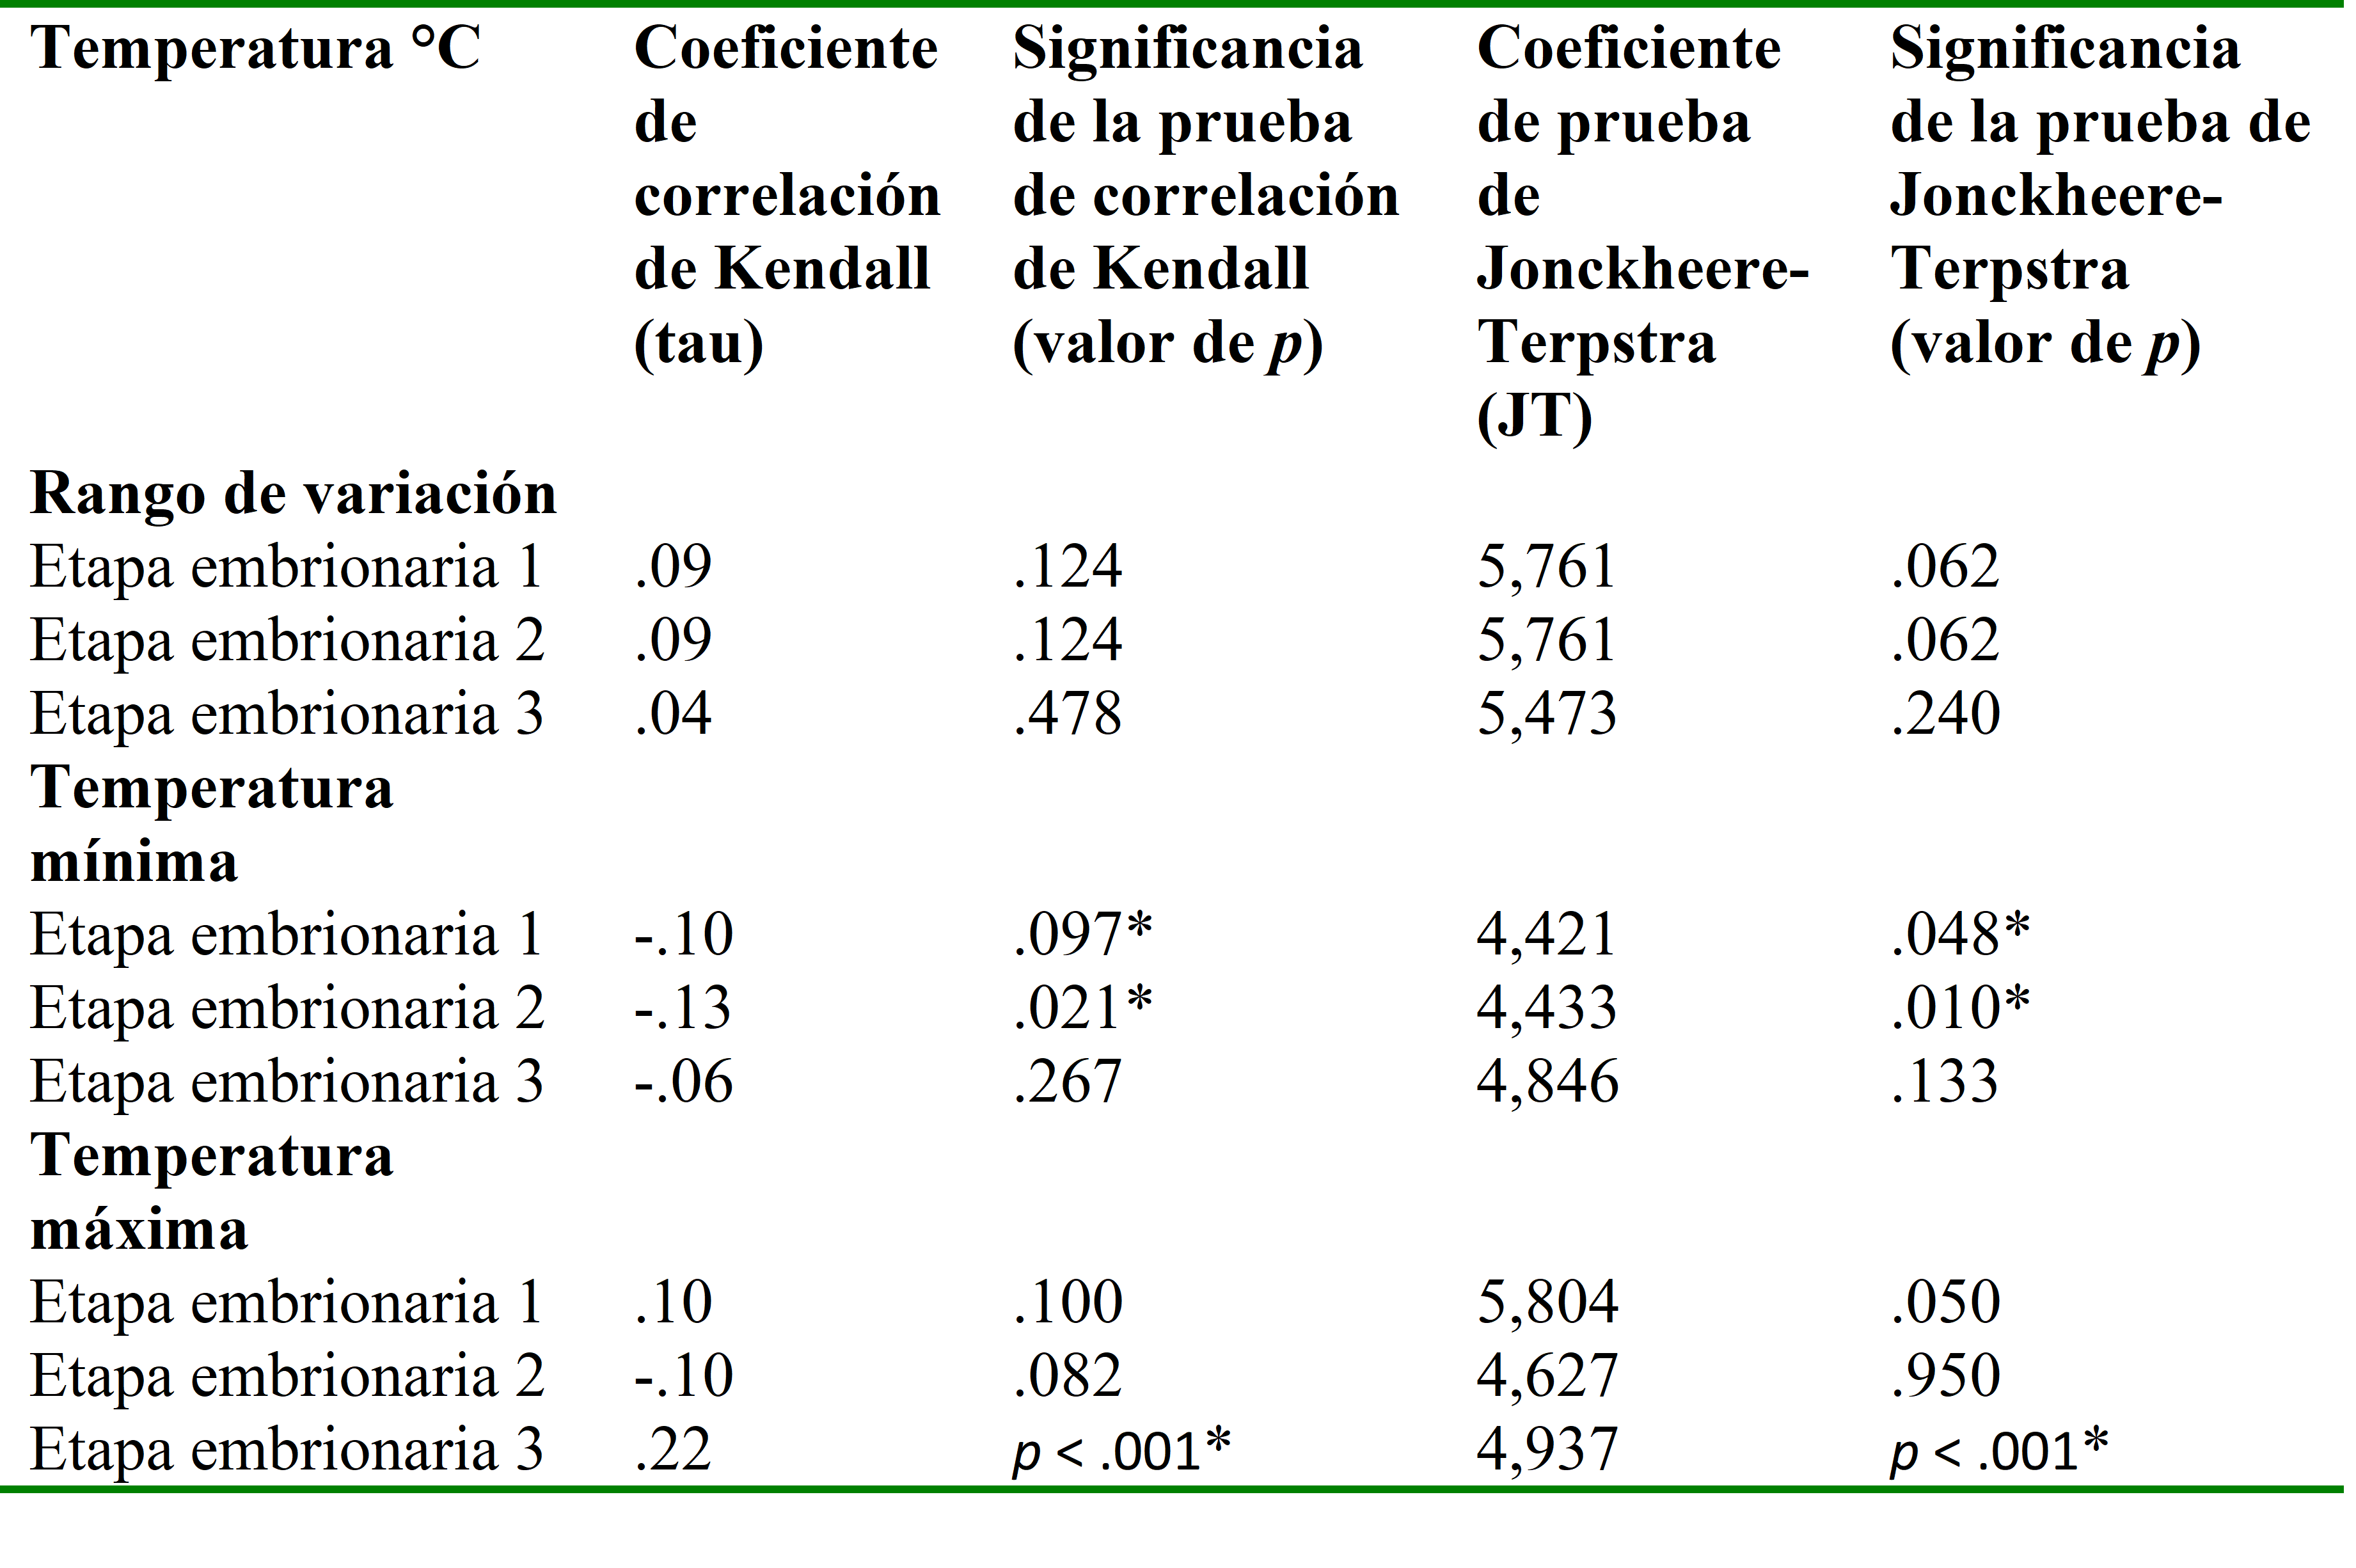  Resultados del
análisis de correlación de Kendall y la prueba de Jonckheere-Terpstra
para las variables de temperatura con los valores del DIx.